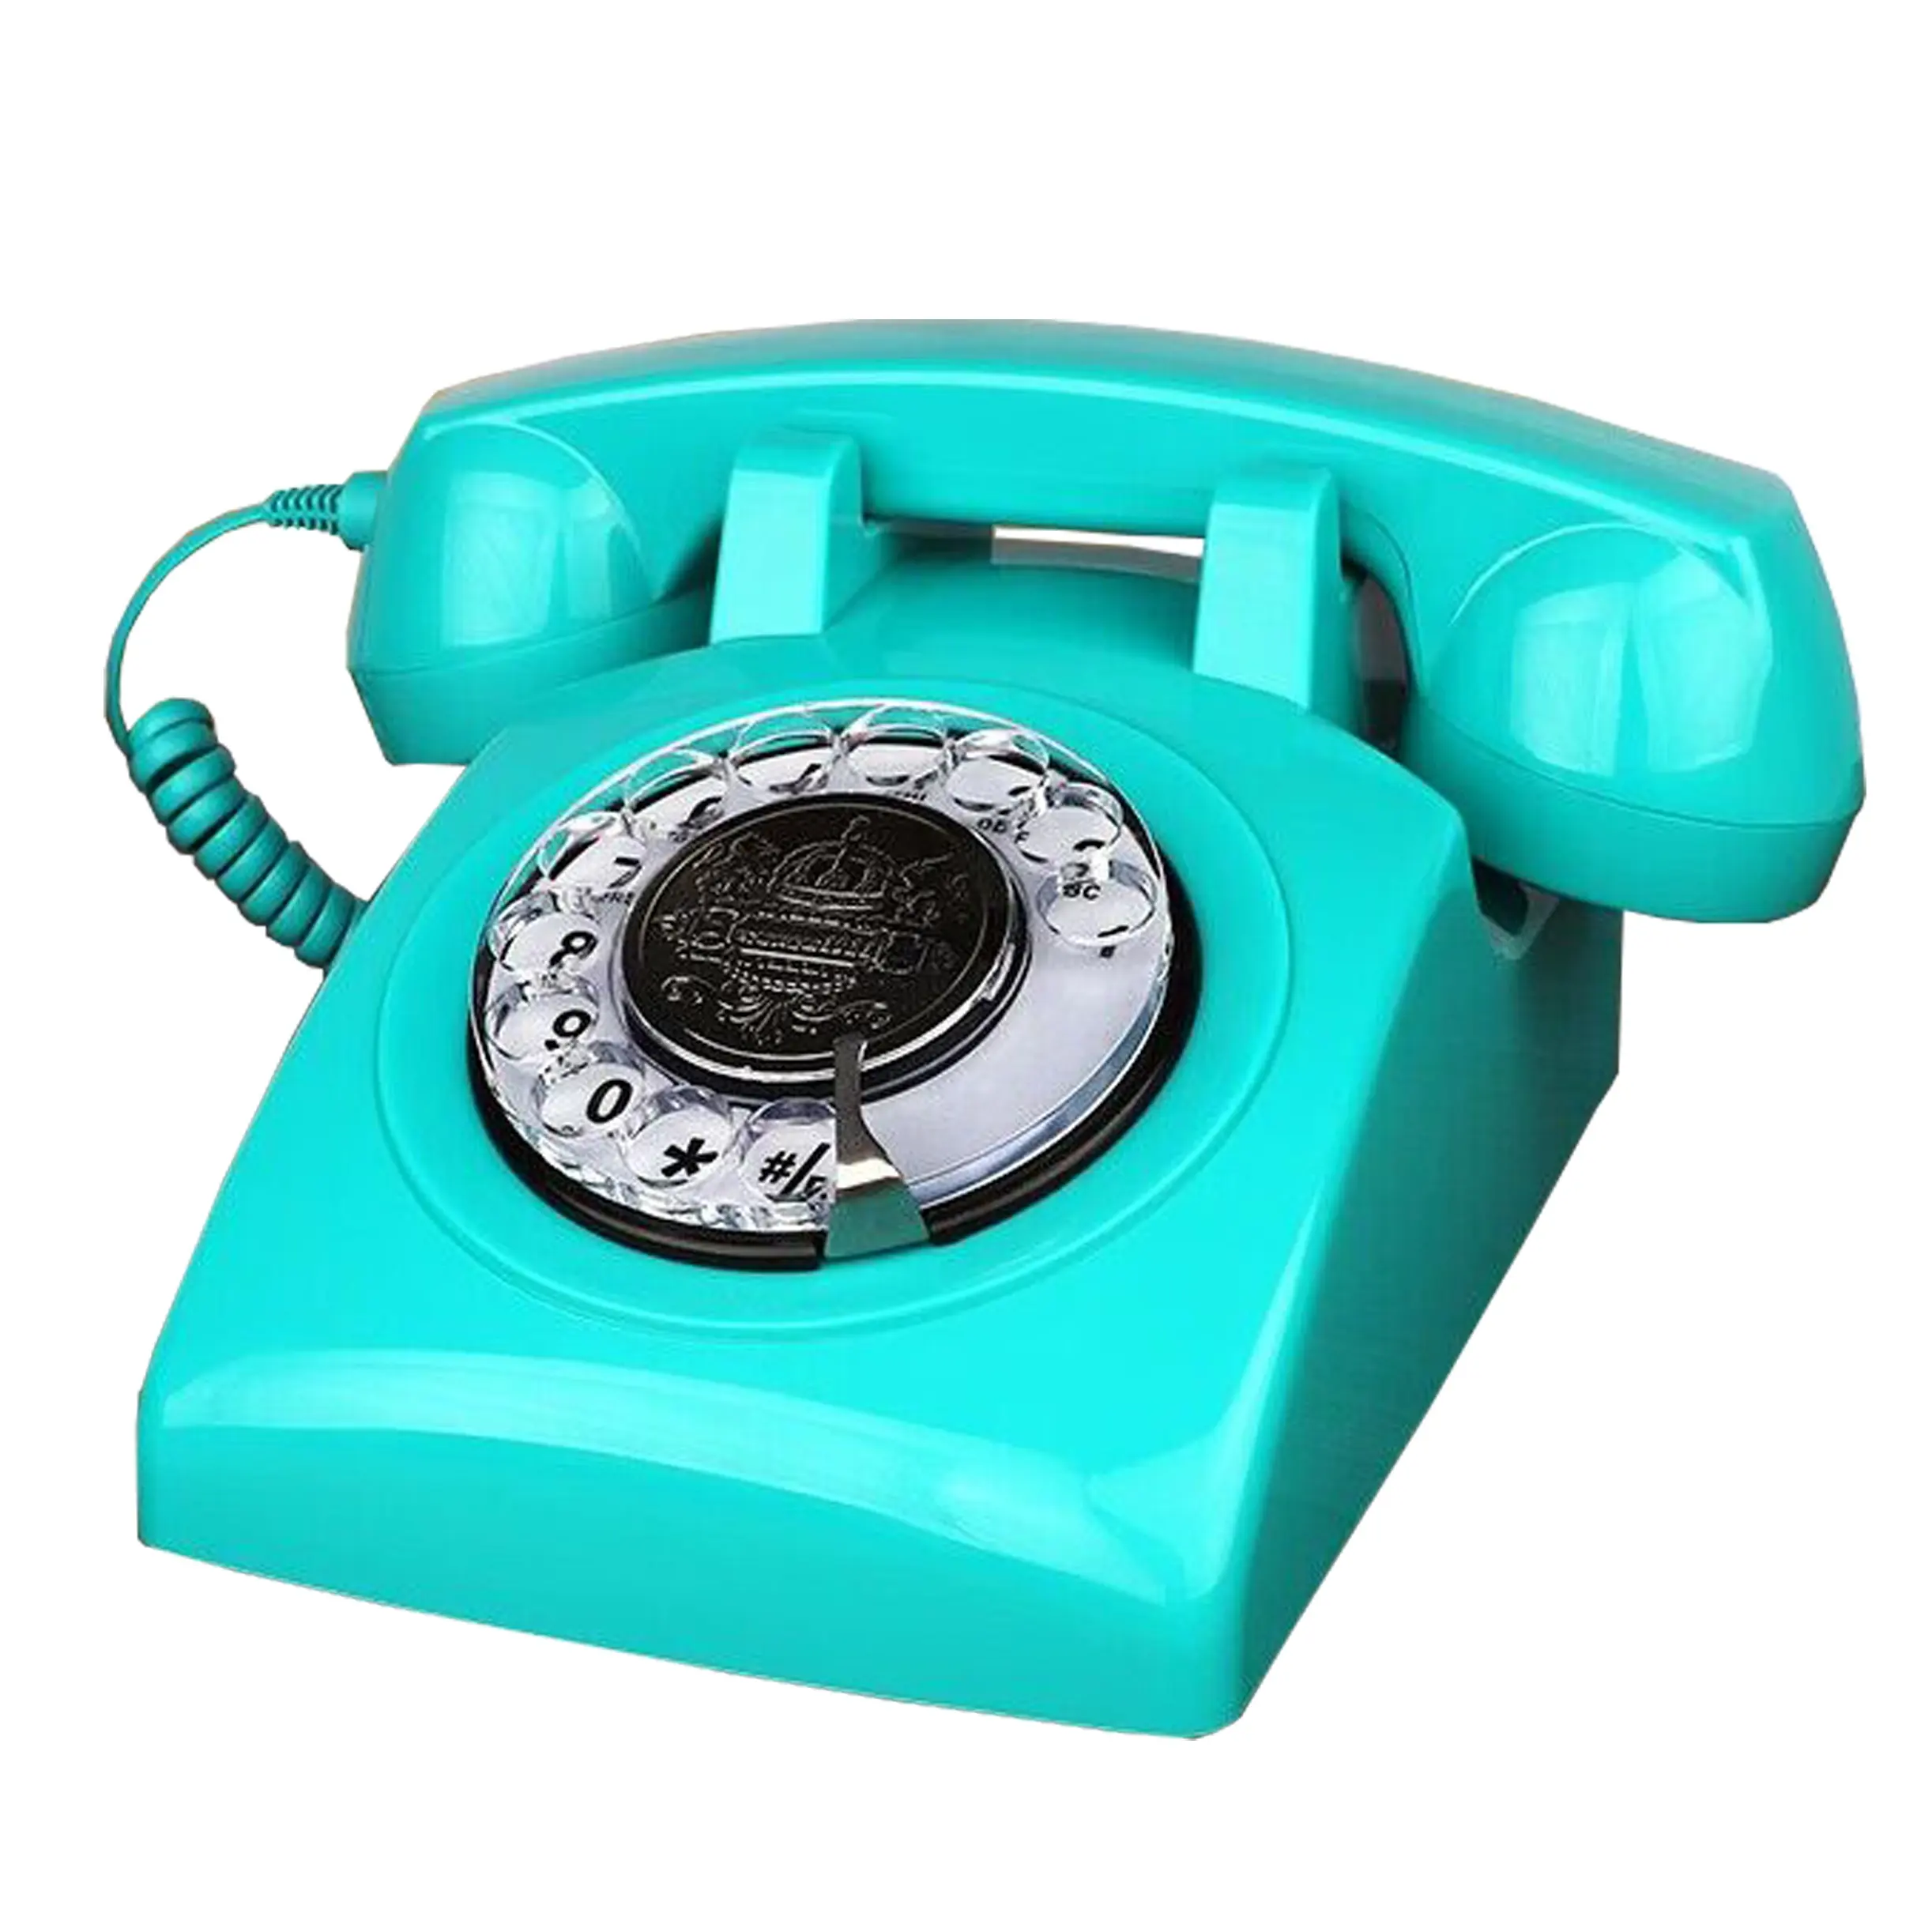 Vecchio stile telefono manopola Rotativa telefono antico telefono SIM card scrivania uso del telefono per ufficio